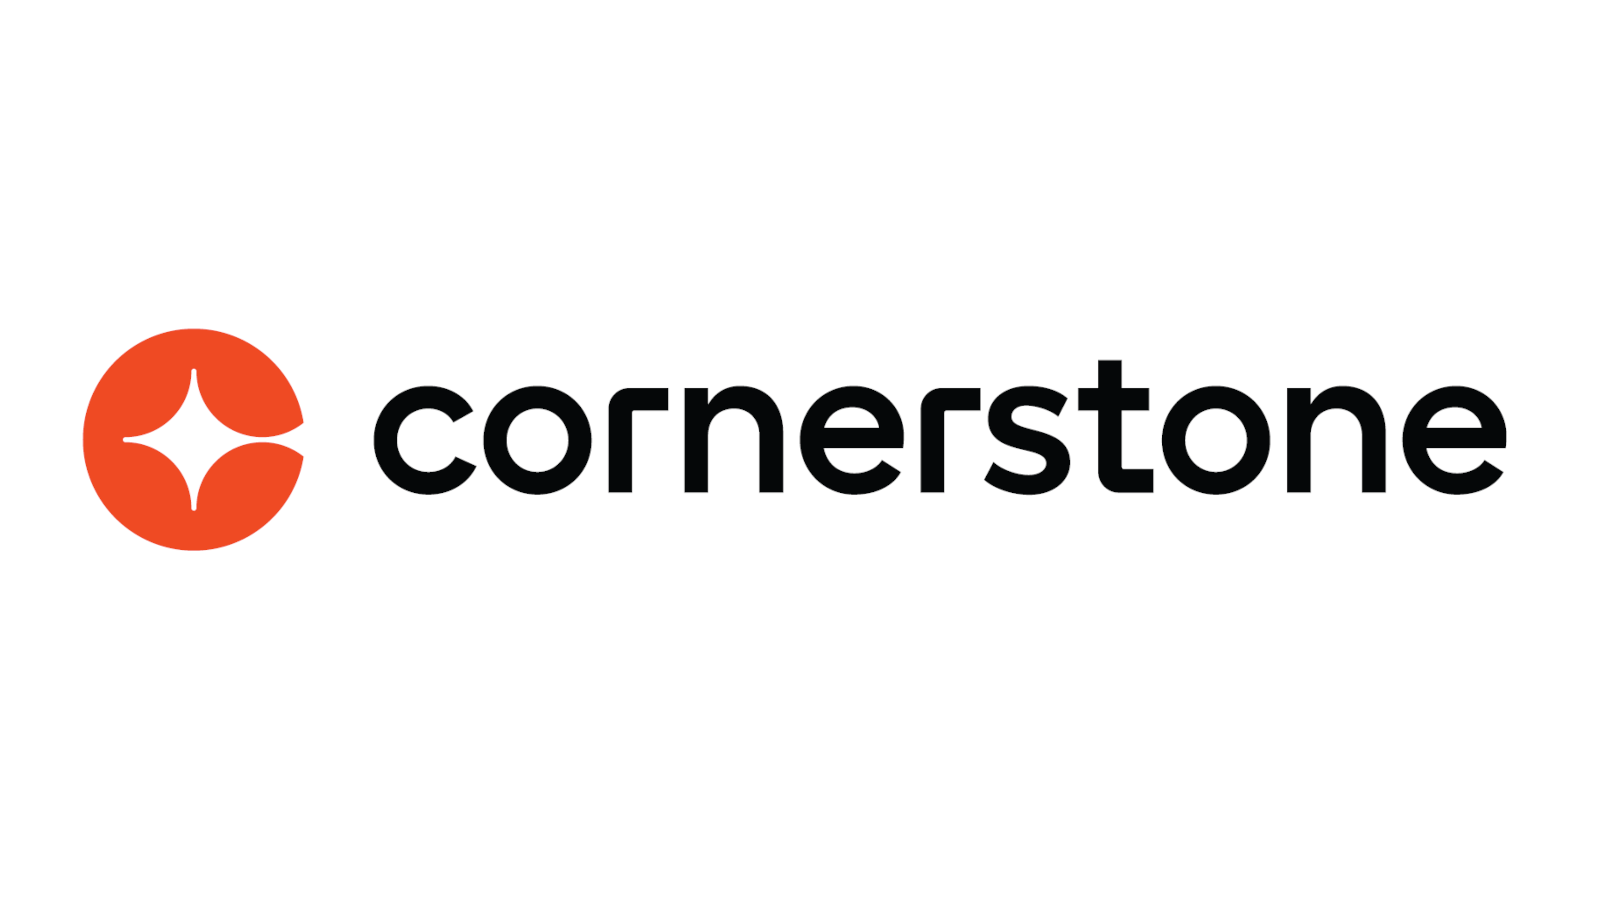 Cornerstone Careers